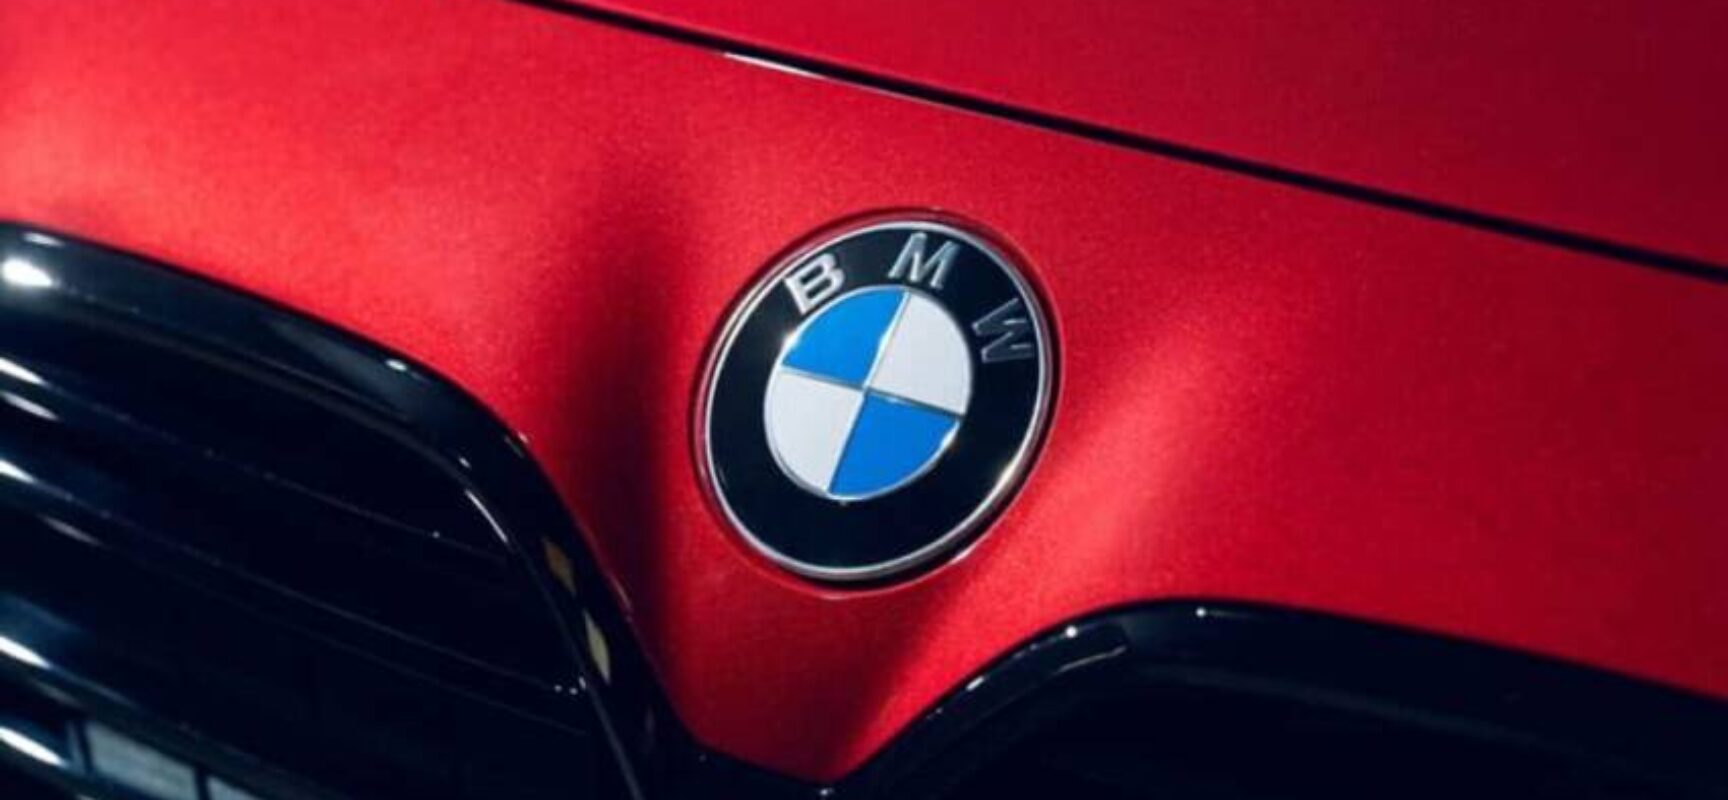 Erro de vírgula em propaganda resulta em indenização a dono de BMW, diz Portal